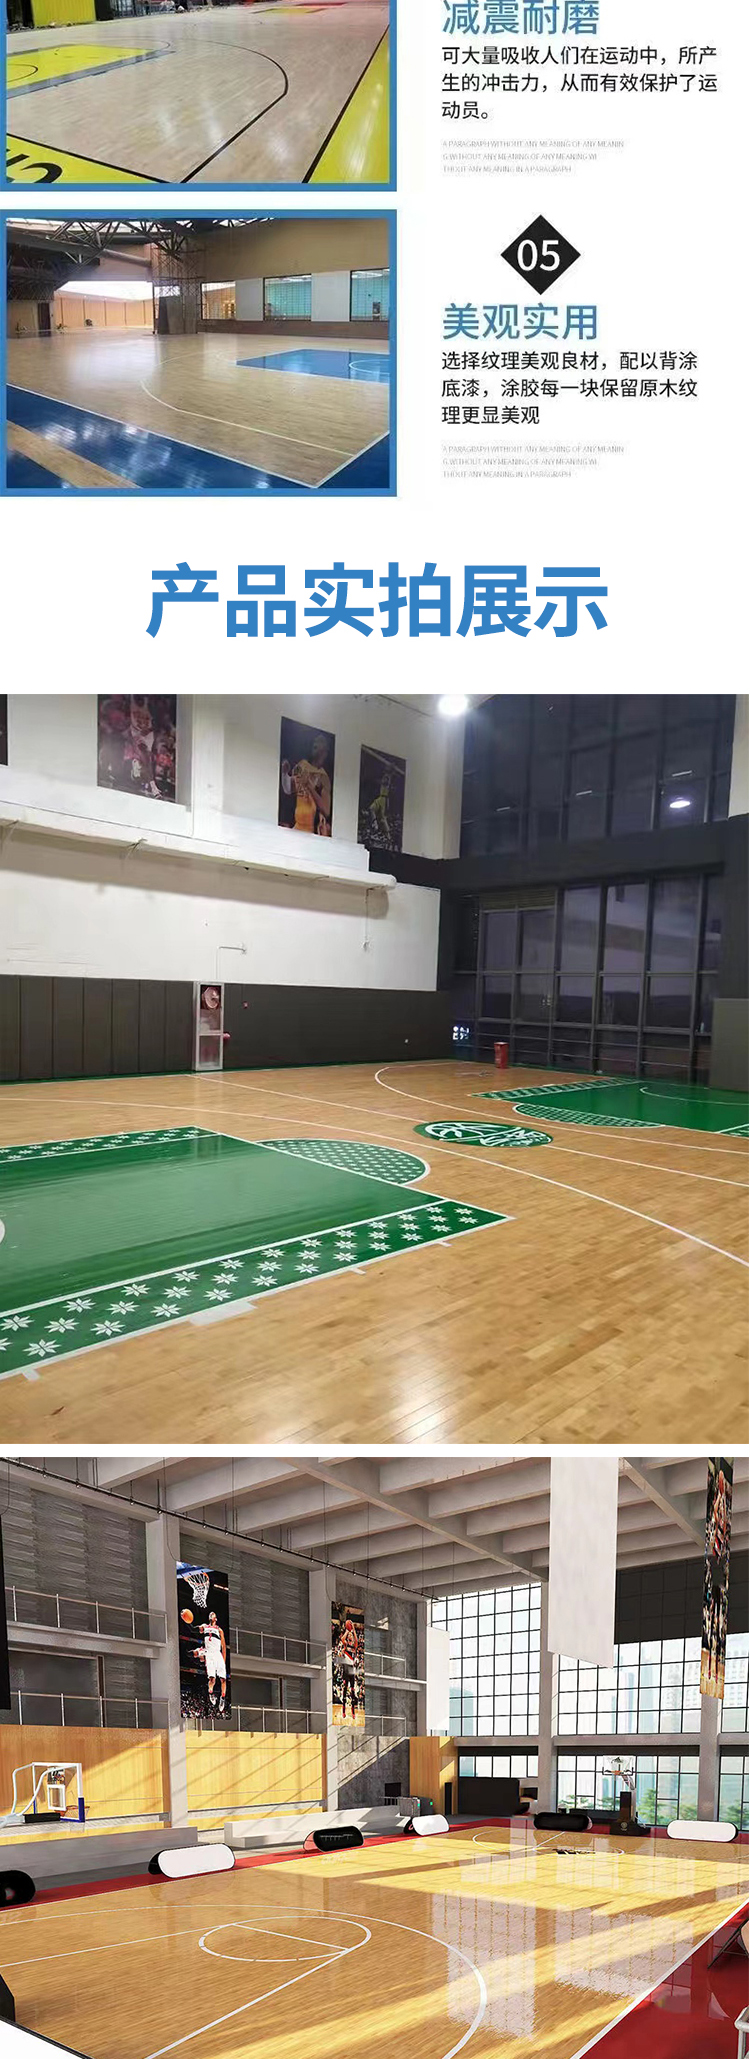 篮球木地板多少钱一个_篮球砸地板进球_体育馆篮球地板